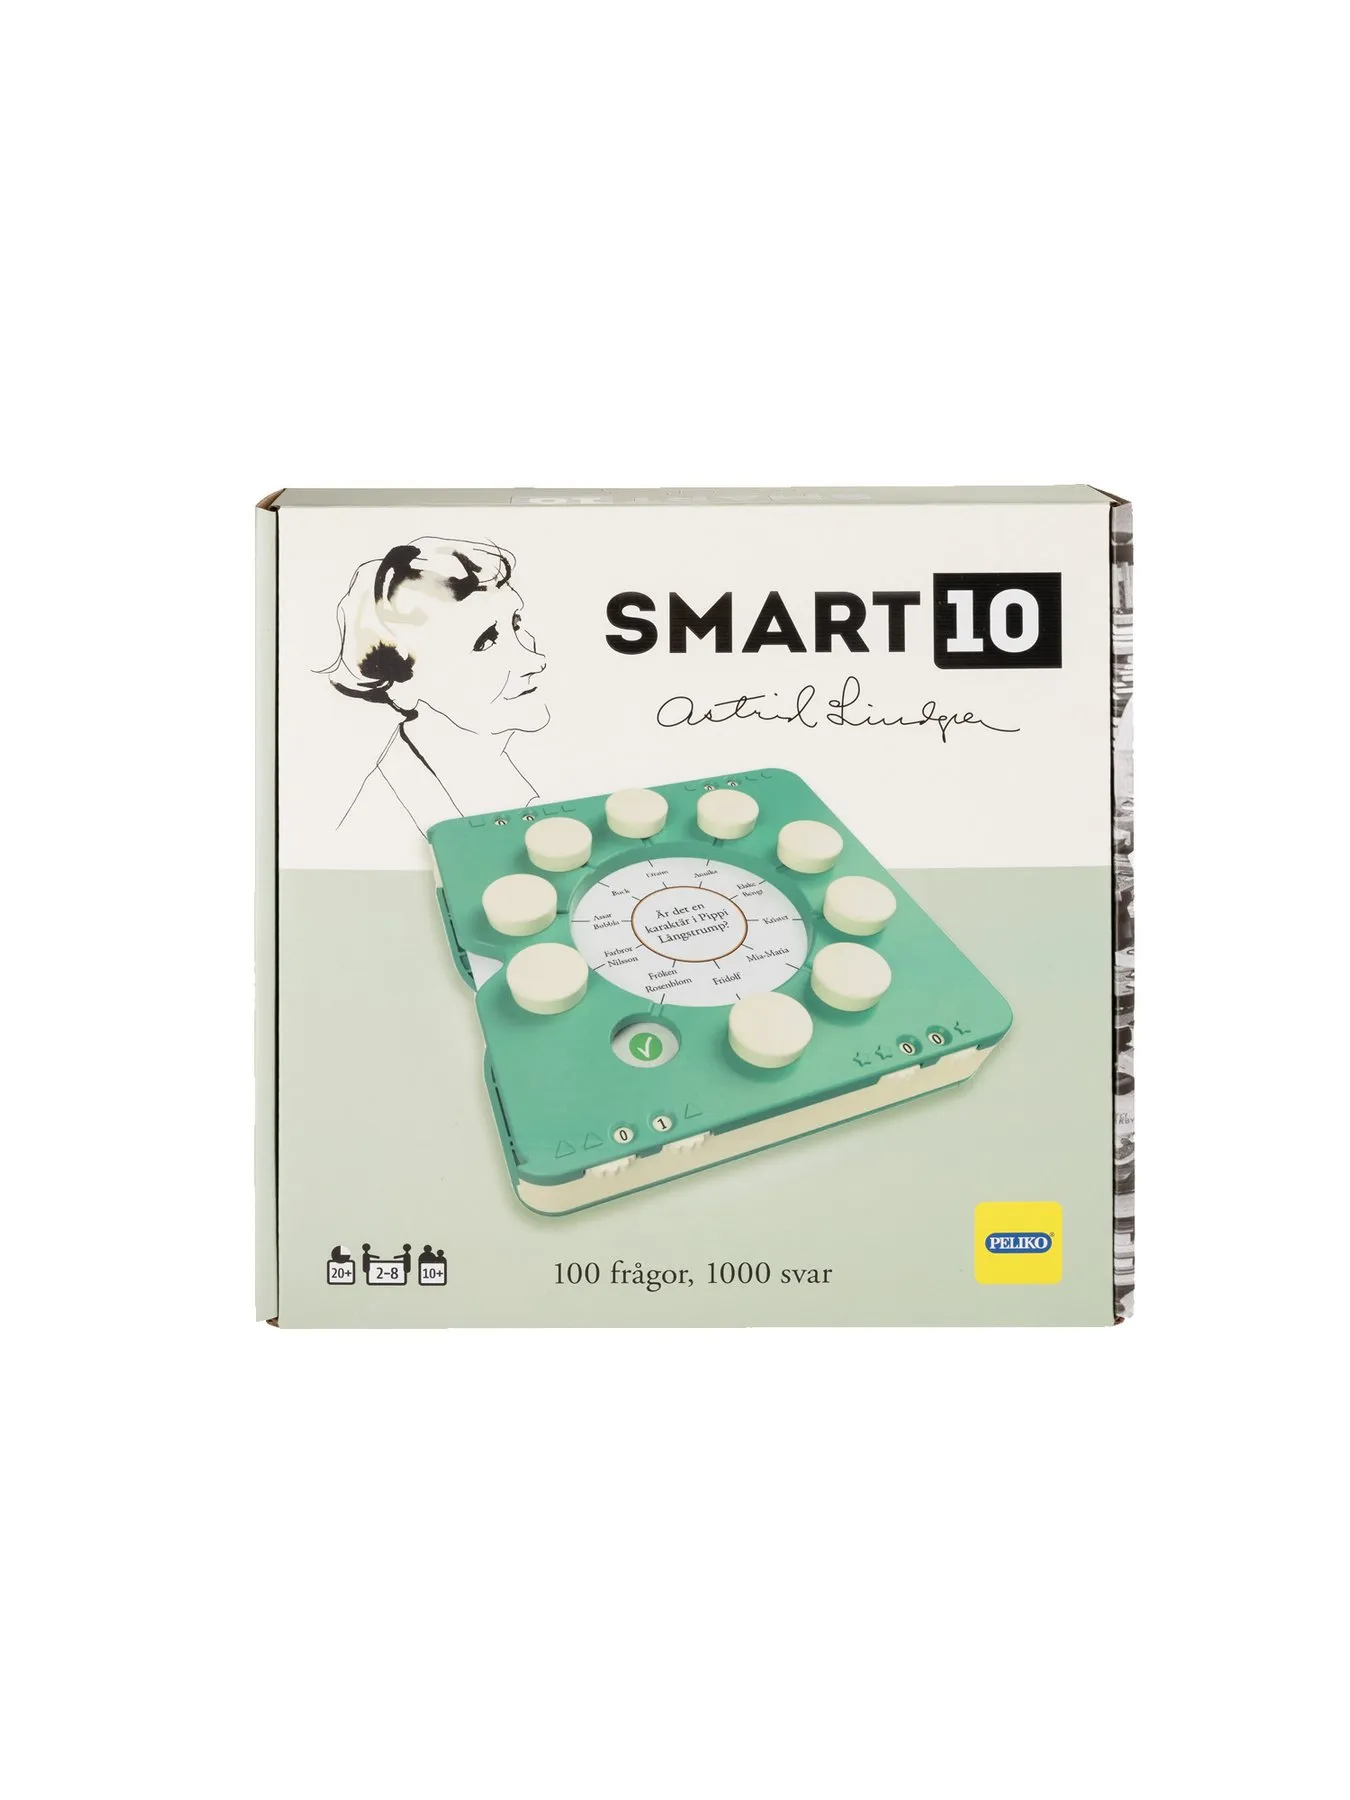 Smart10-Spiel Astrid Lindgren (auf Schwedisch)